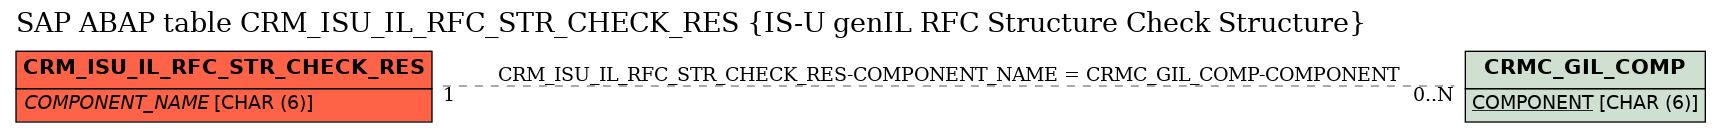 E-R Diagram for table CRM_ISU_IL_RFC_STR_CHECK_RES (IS-U genIL RFC Structure Check Structure)